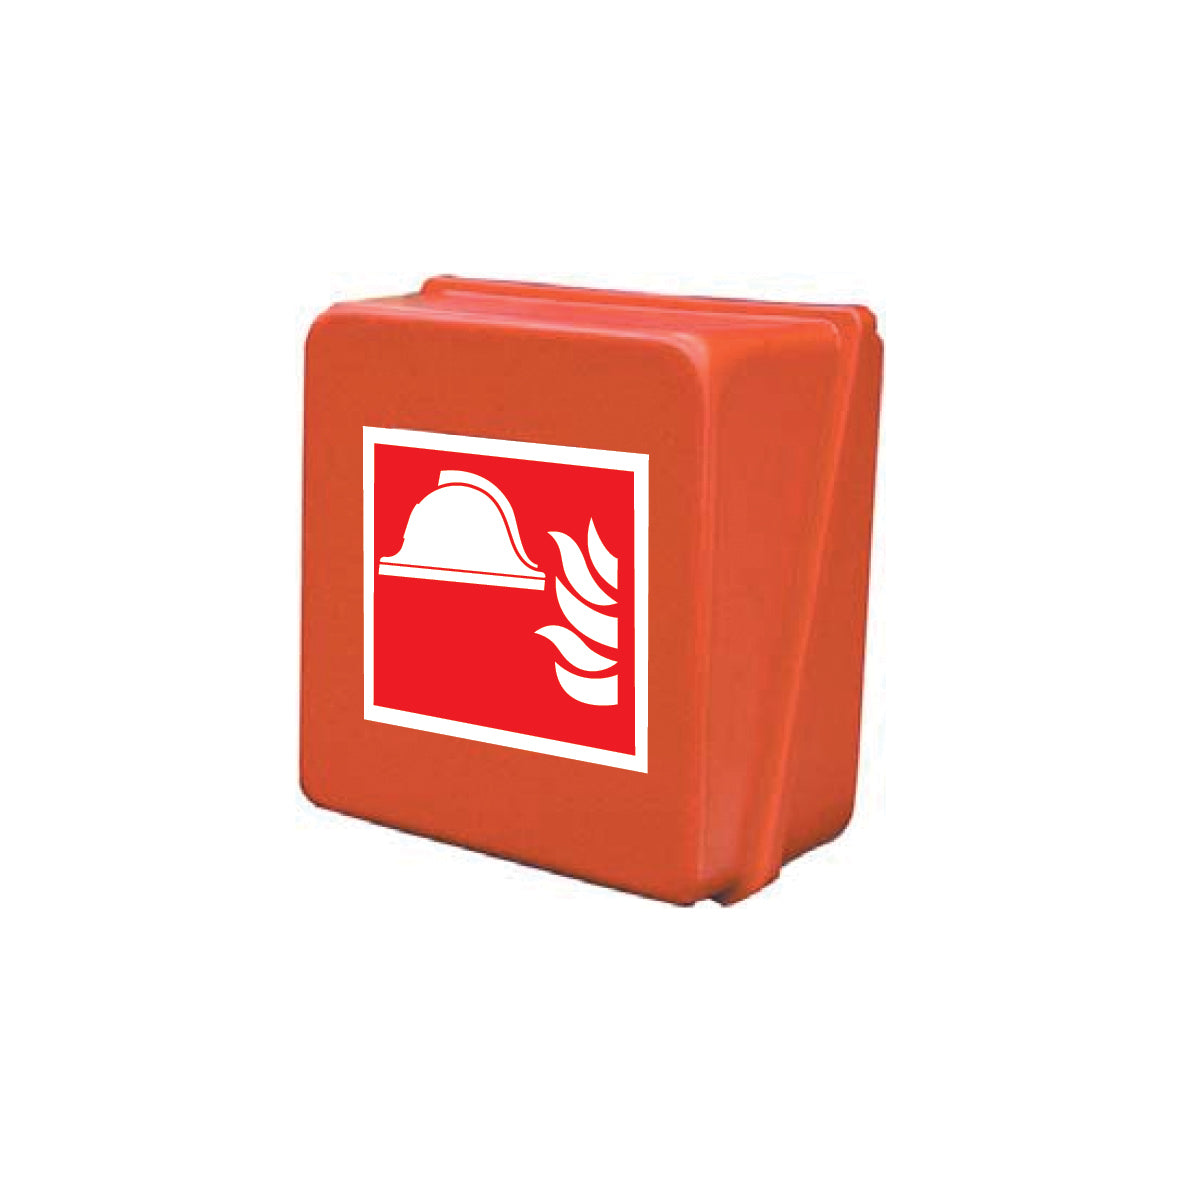 Löschdeckenbehälter, Kunststoff rot, 320 x 320 x 180 mm (BxHxT)